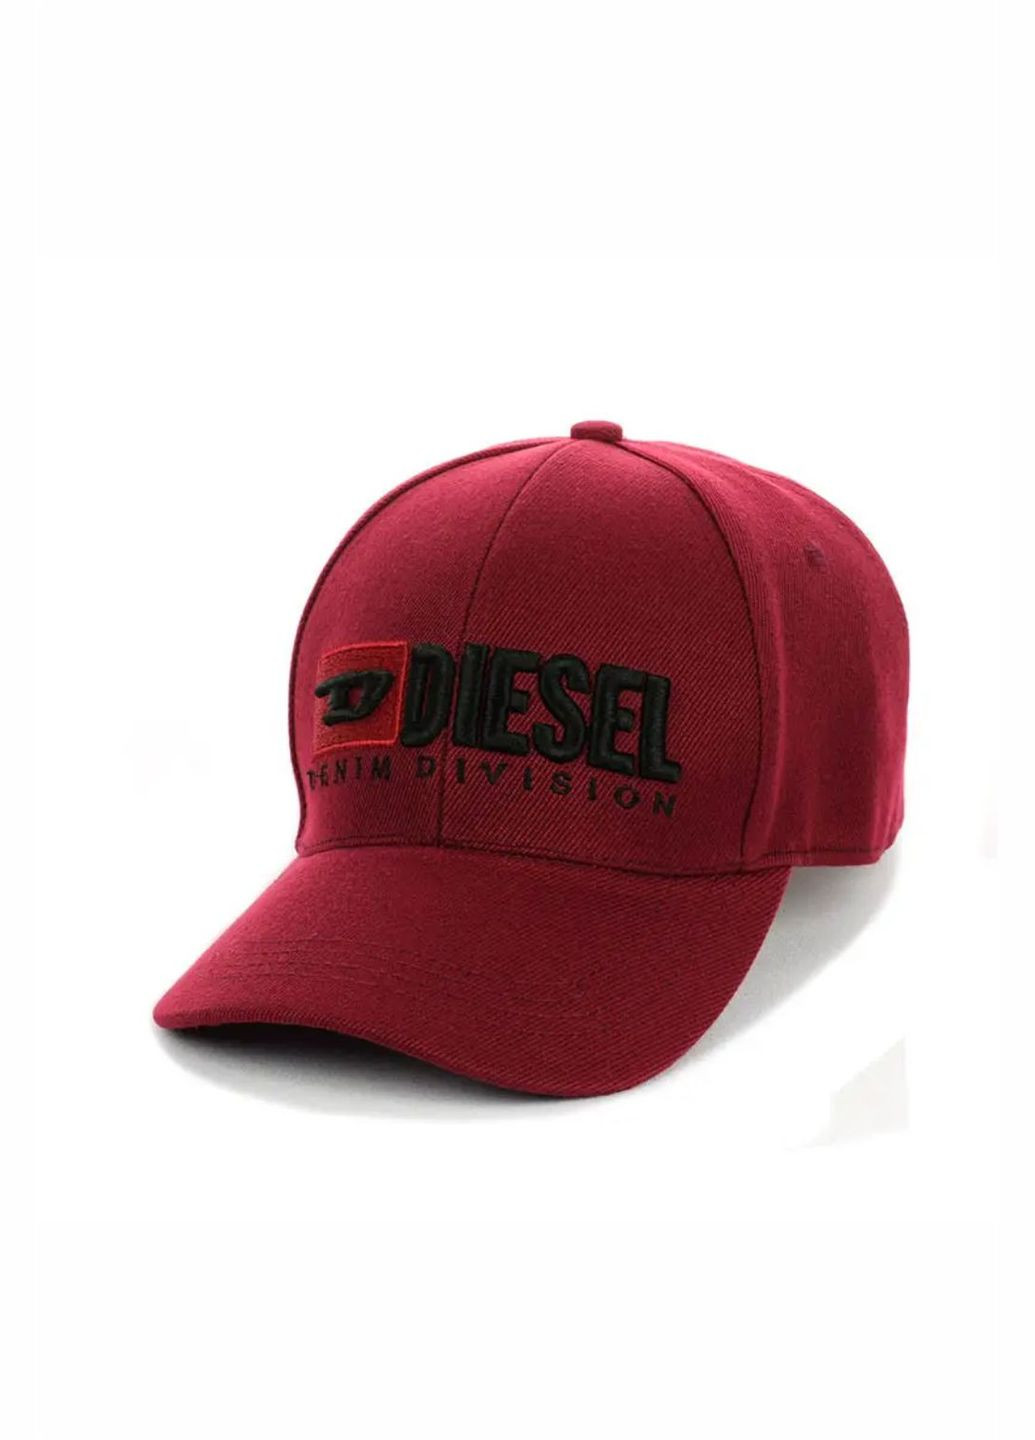 Кепка молодіжна Diesel / Дизель M/L No Brand кепка унісекс (280929009)